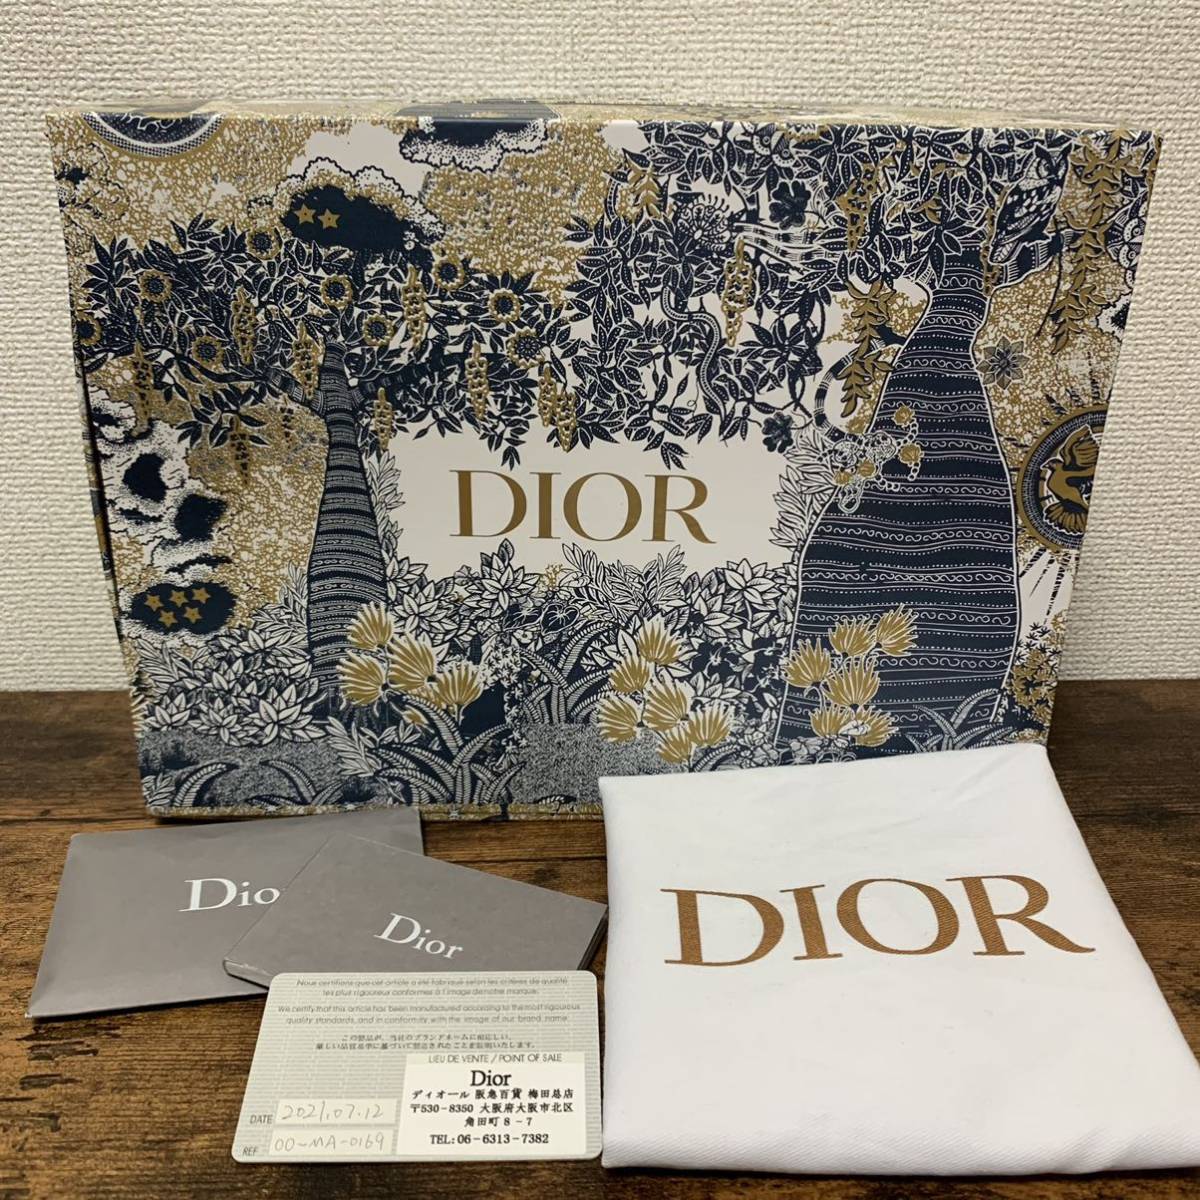 シリアル&購入証明書あり 正規品 Christian Dior ディオール ボビー